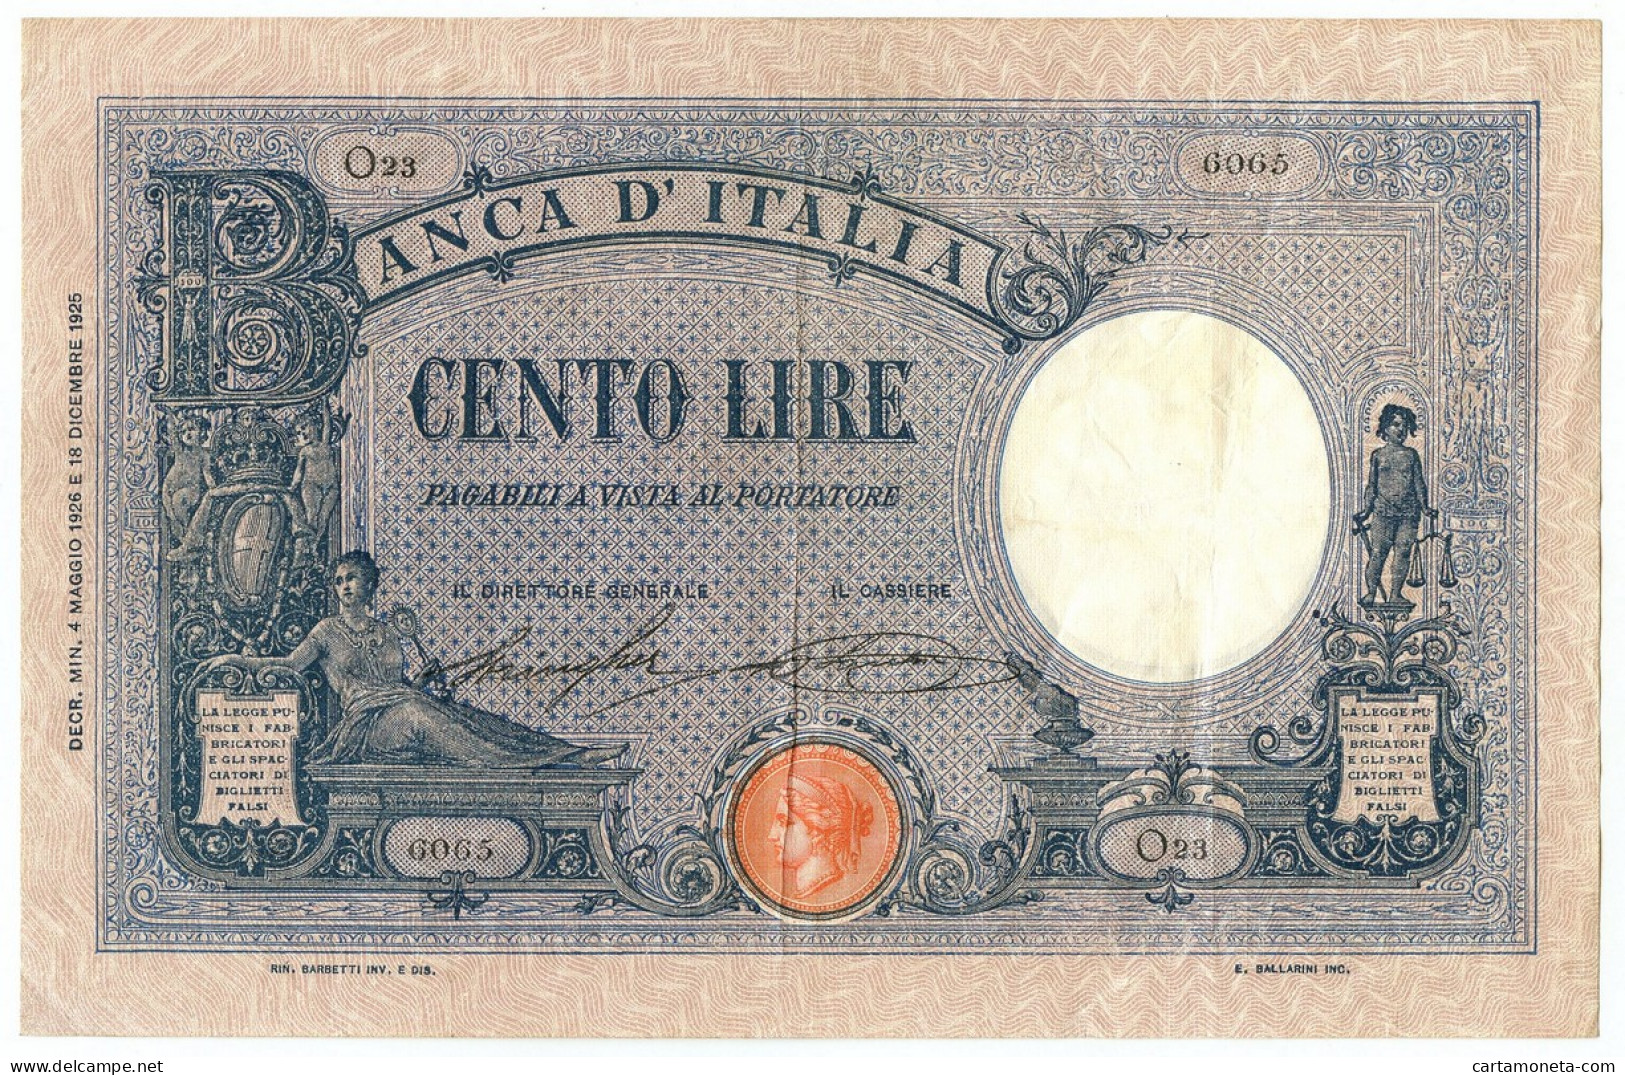 100 LIRE BARBETTI GRANDE B AZZURRO TESTINA DECRETO 04/05/1926 BB/BB+ - Regno D'Italia – Other